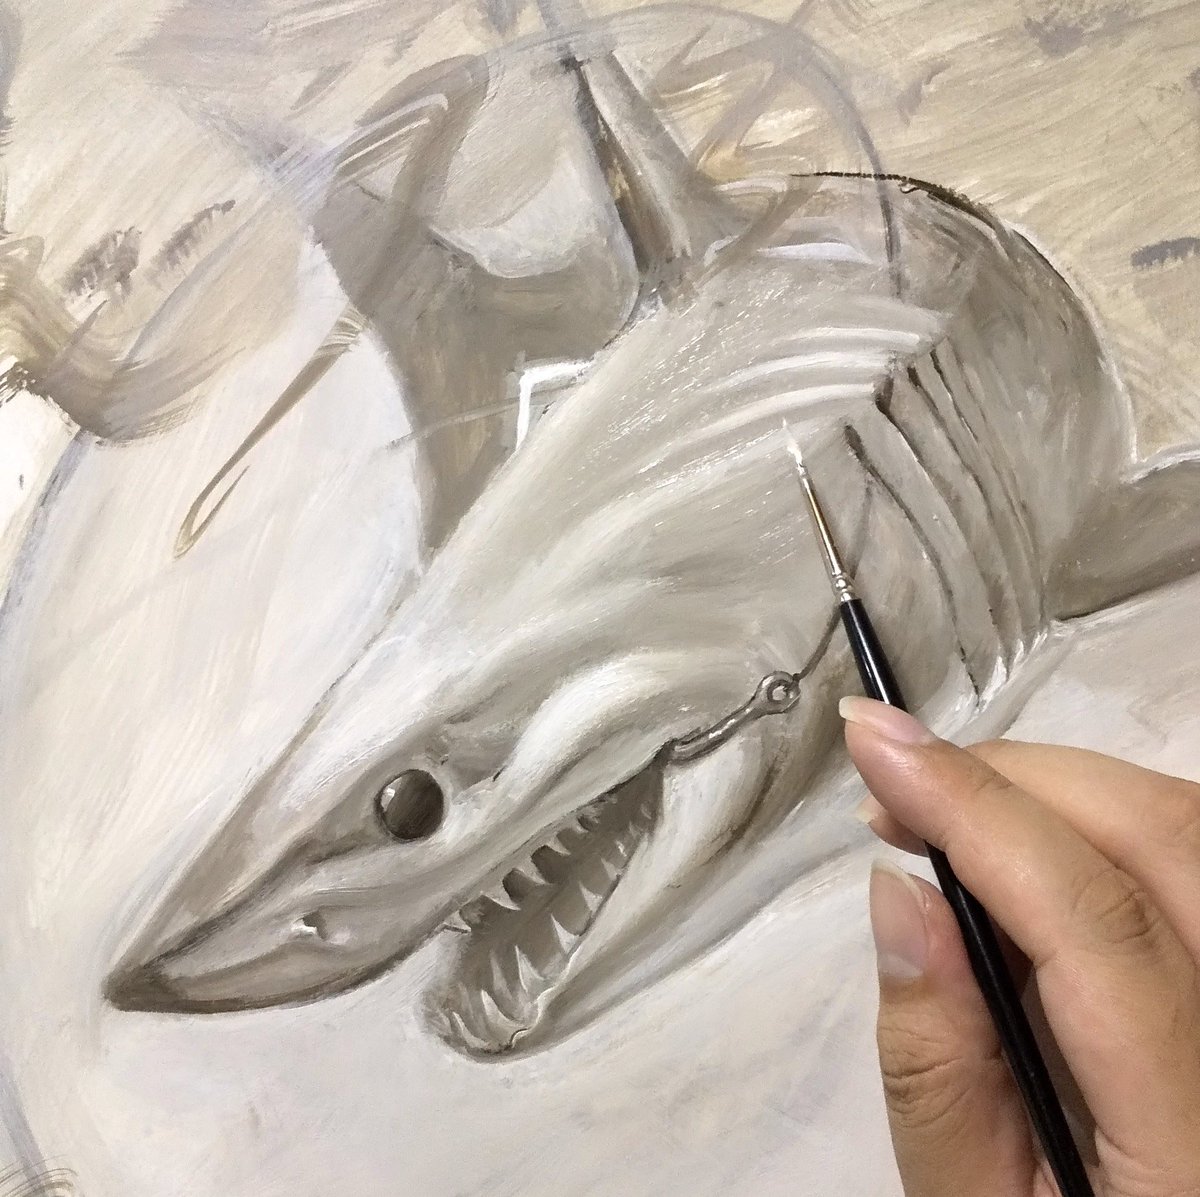 サメ田氏 בטוויטר サメをリアルに描くのであれば 外鰓軟骨がポイントです デッサンの基本は表面でなく構造を描く